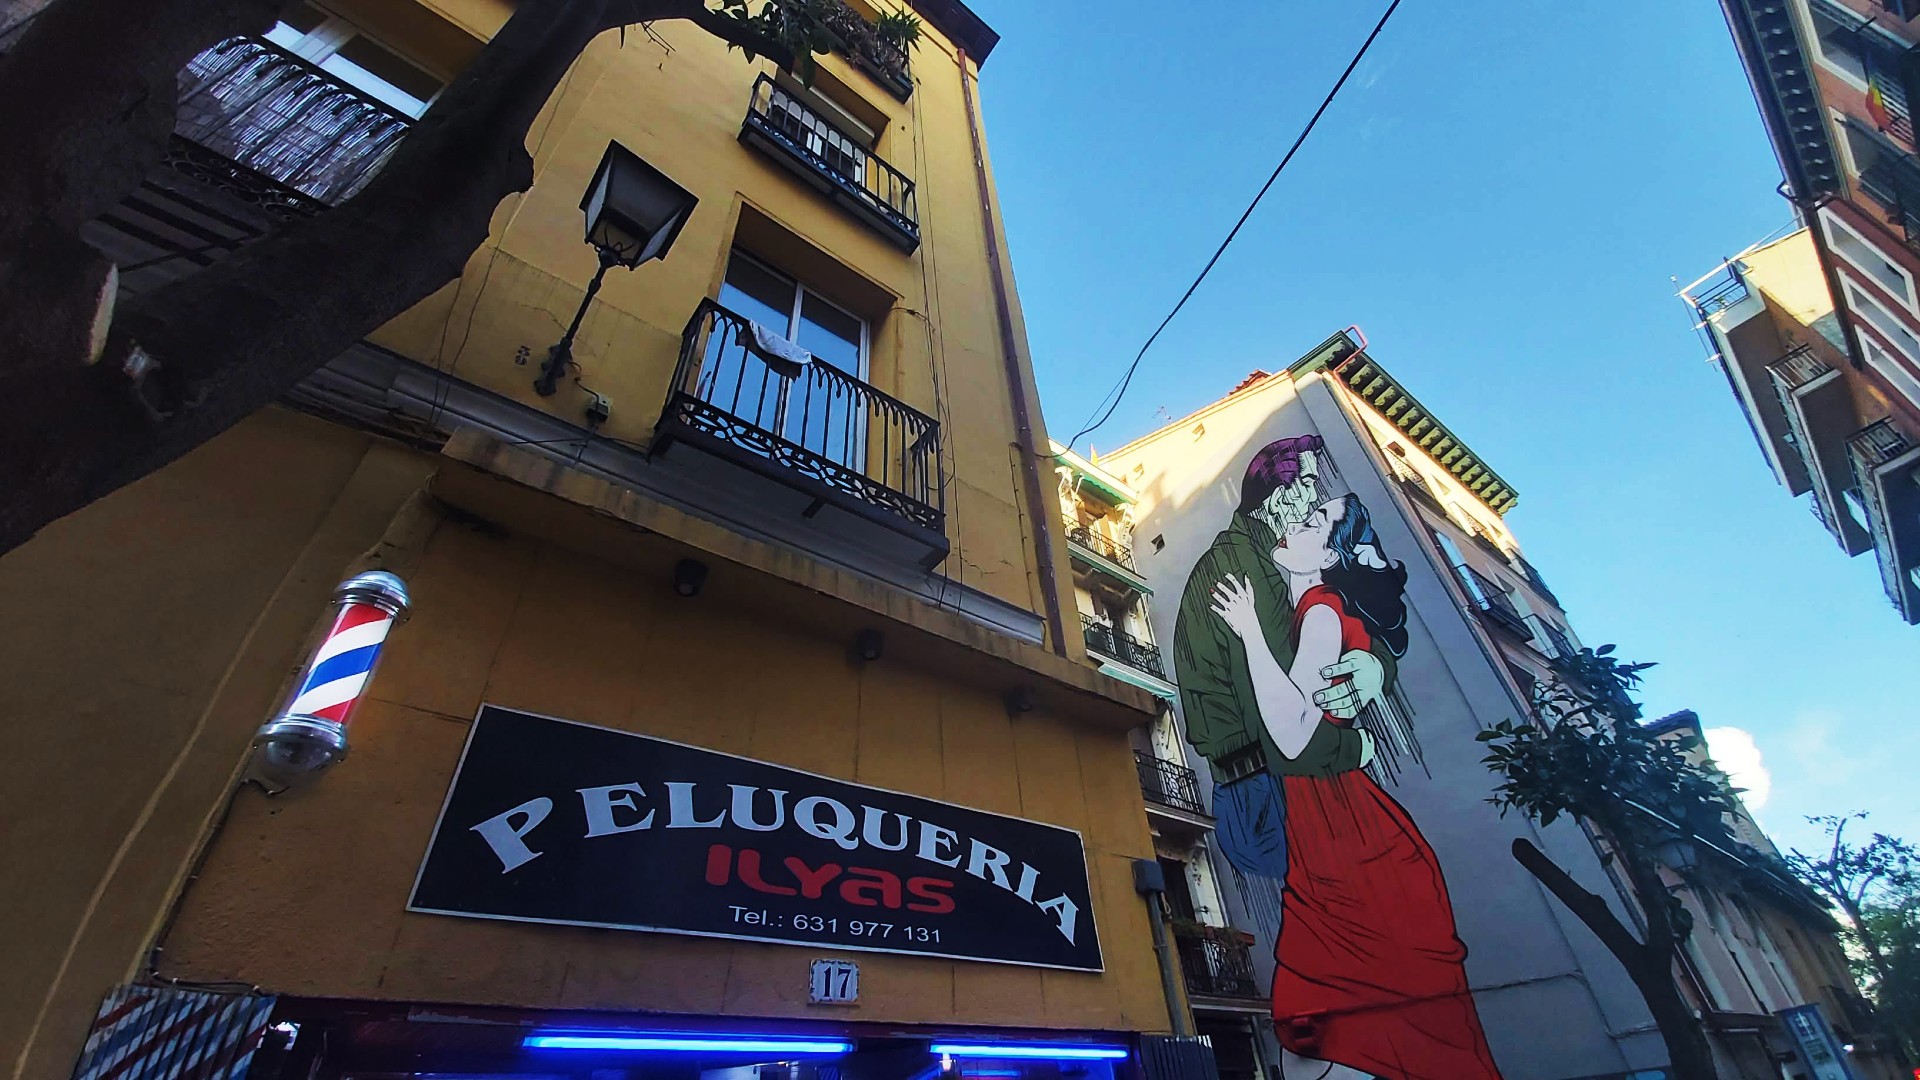 Sede del mercato delle pulci El Rastro e di Lavapiés, il Distrito de Embajadores è una zona hipster-friendly ricca di bar alternativi, caffè stravaganti e alcune delle migliori opere di street art di Madrid.